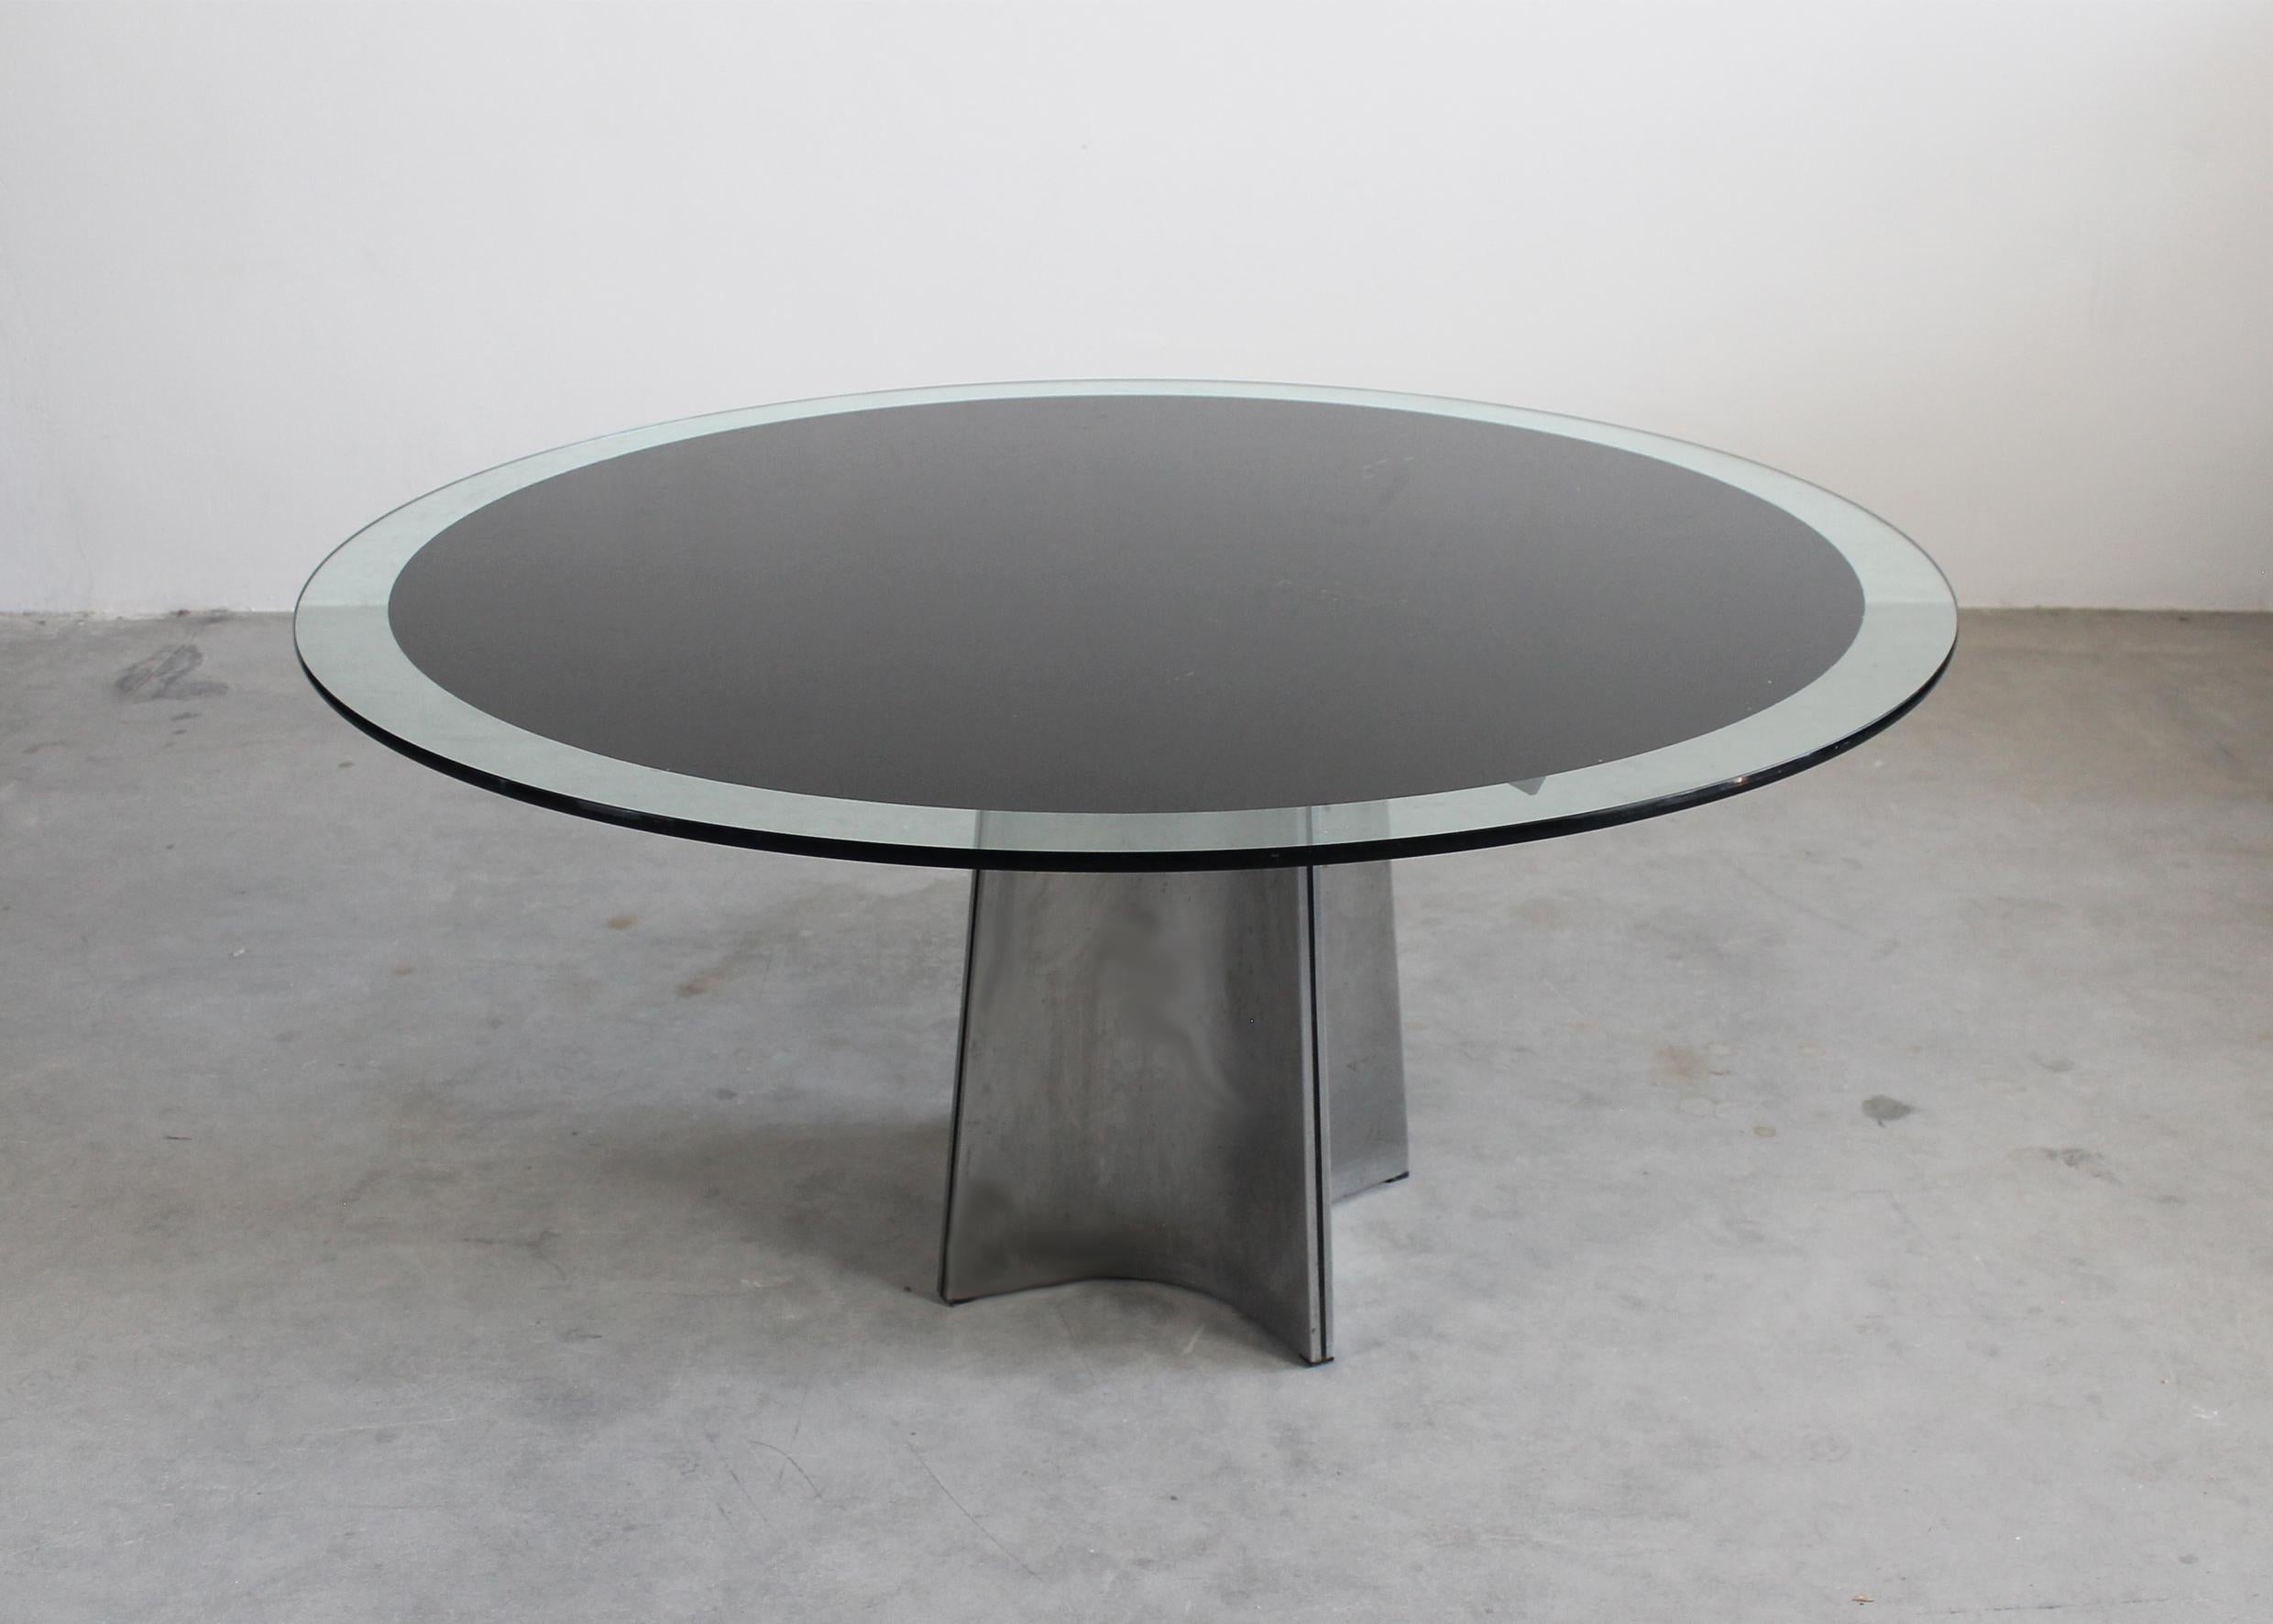 Runder Esstisch mit Sockel, Modell UFO, mit einem Gestell aus gebürstetem Stahl und einer Tischplatte aus dickem Glas mit einem Zierkreis aus schwarzer Emaille. 

Entworfen von Luigi Saccardo und hergestellt von Maison Jansen in den 1970er Jahren.